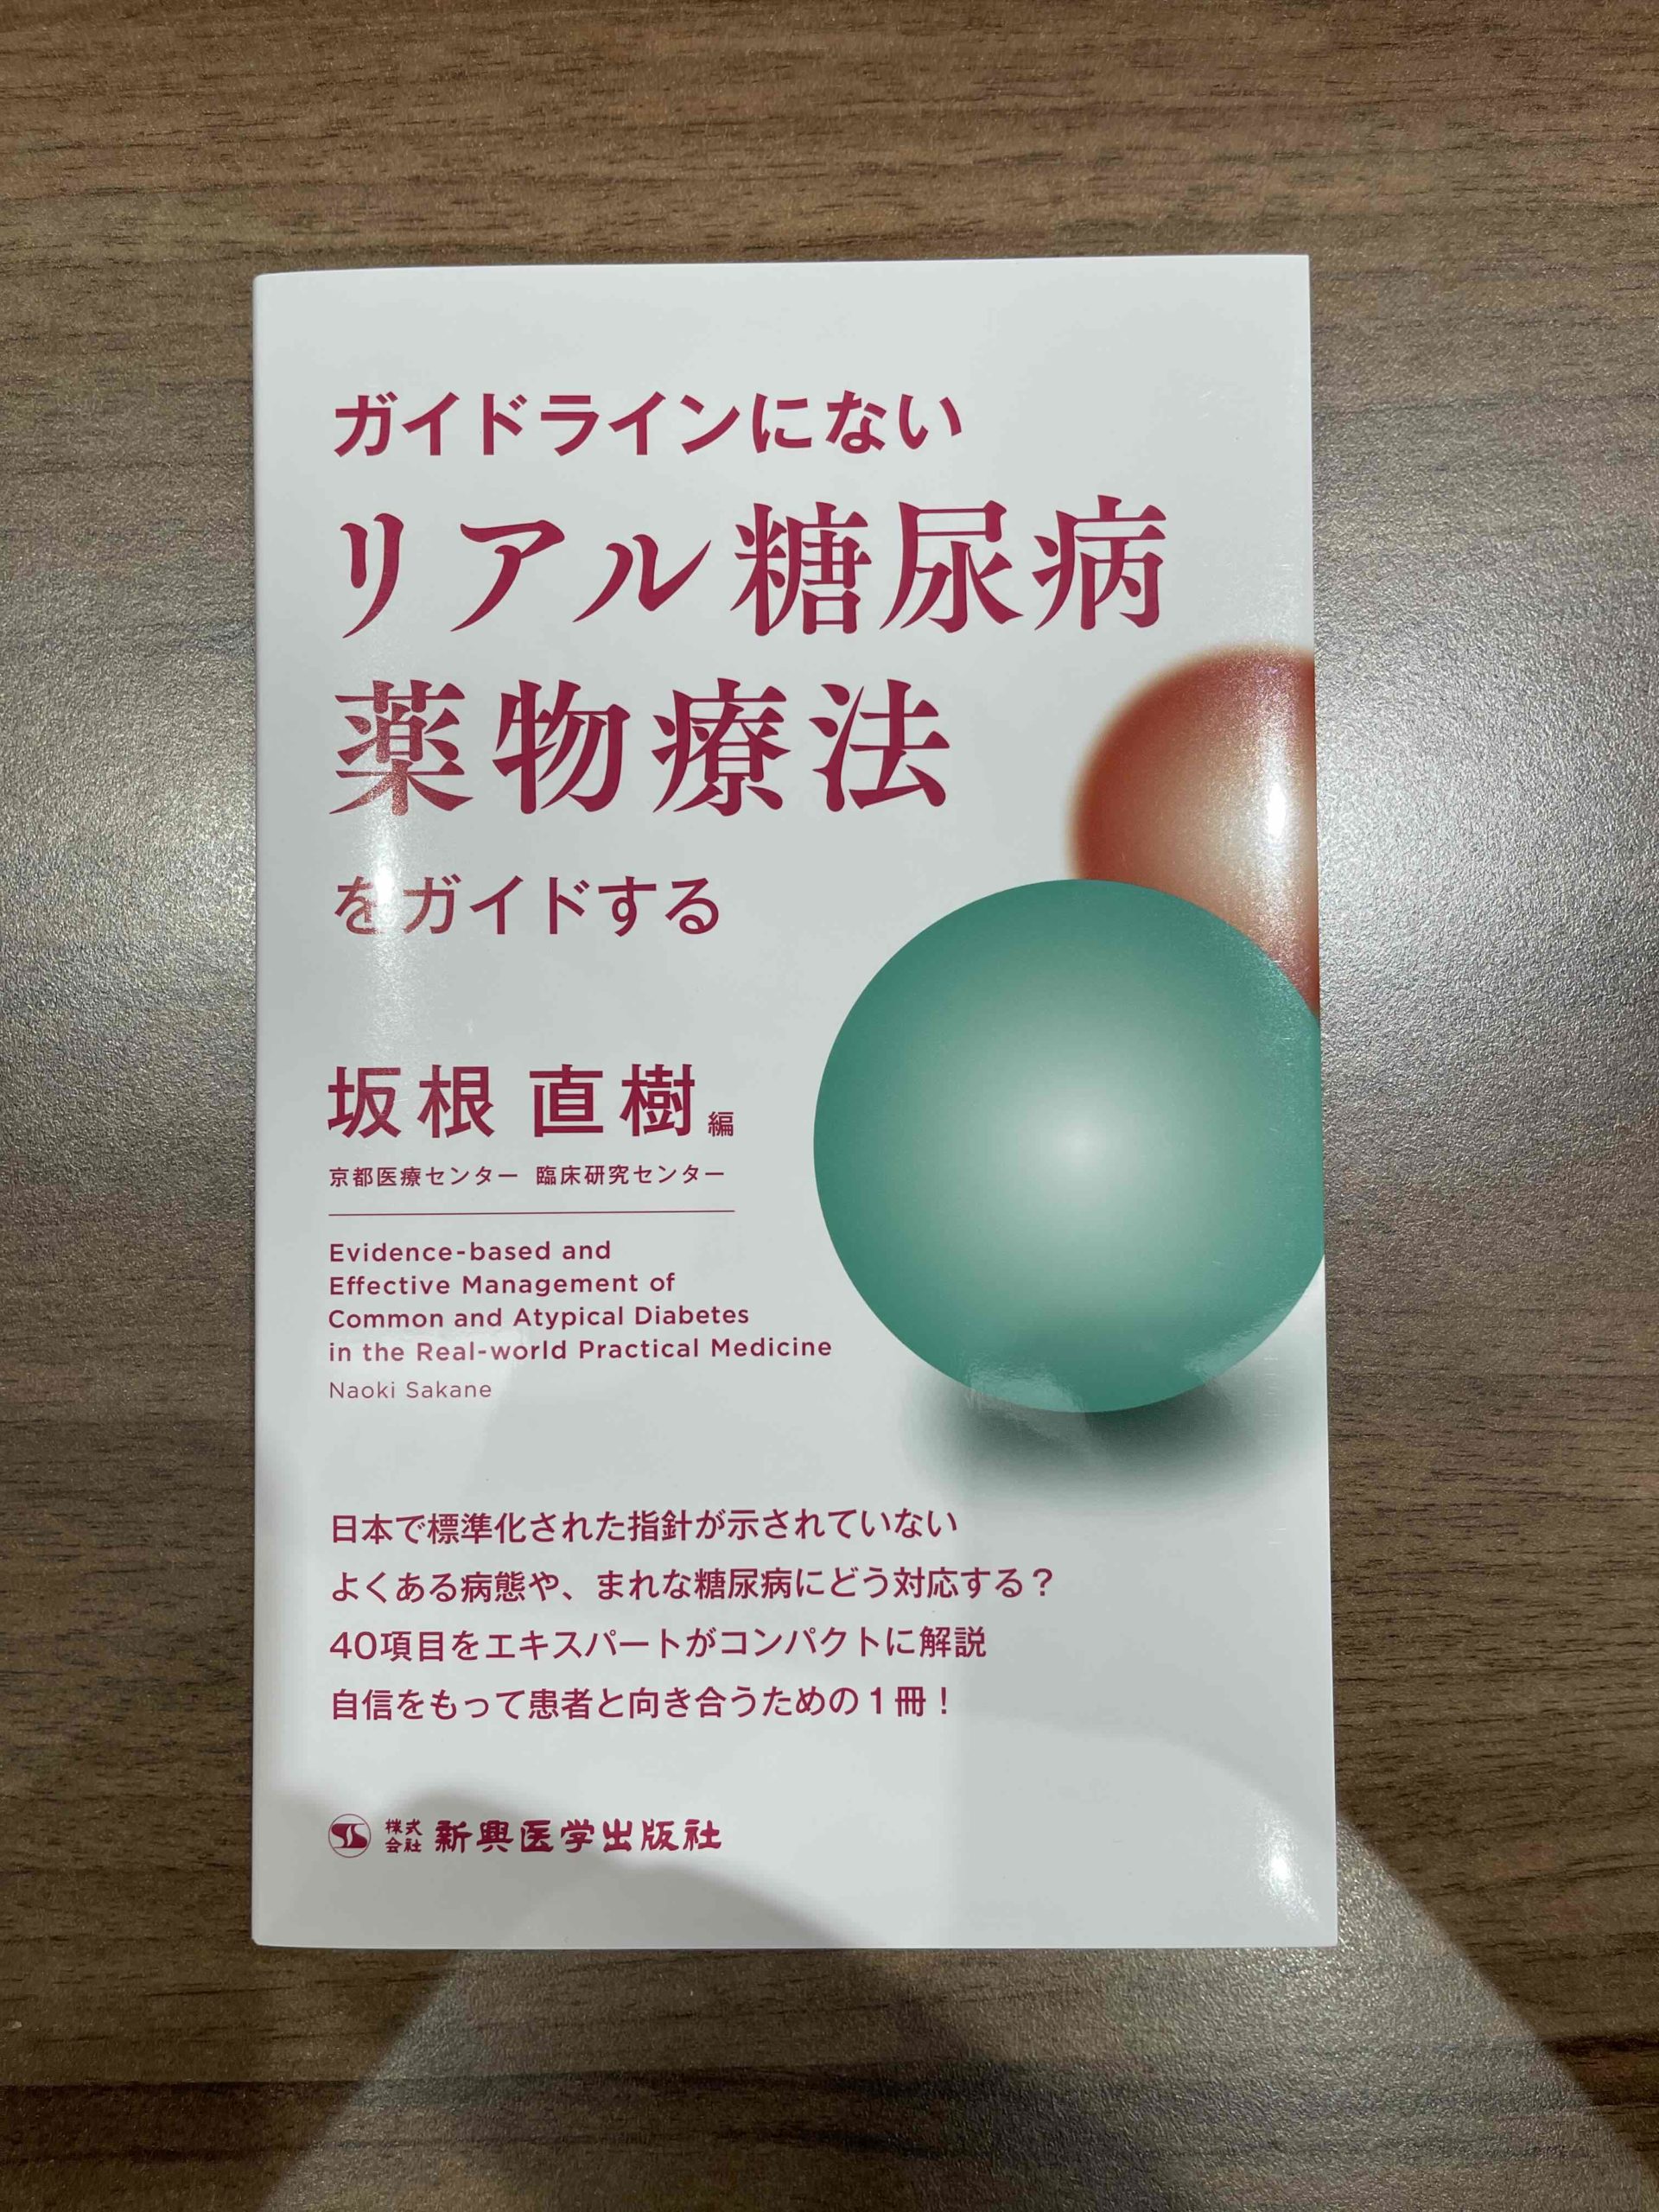 当院医師の西嶌暁生・順子夫妻が一部執筆を担当した書籍が発行されました